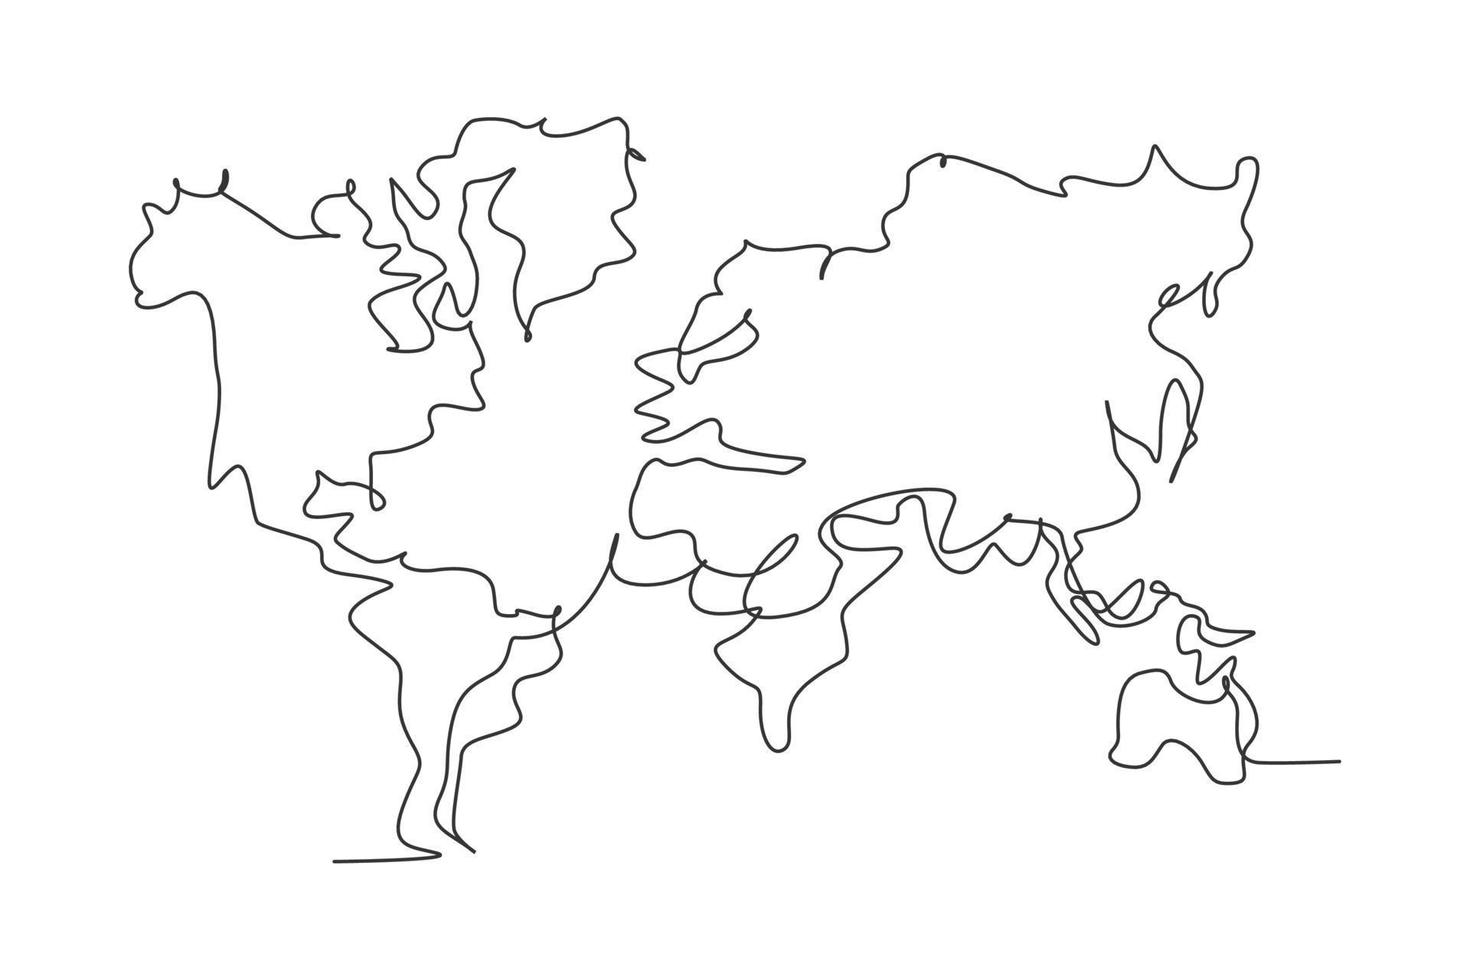 atlas mundial. dibujo continuo de una línea del diseño minimalista del ejemplo del vector del mapa del mundo en el fondo blanco. estilo gráfico moderno de línea simple aislada. concepto gráfico dibujado a mano para la educación